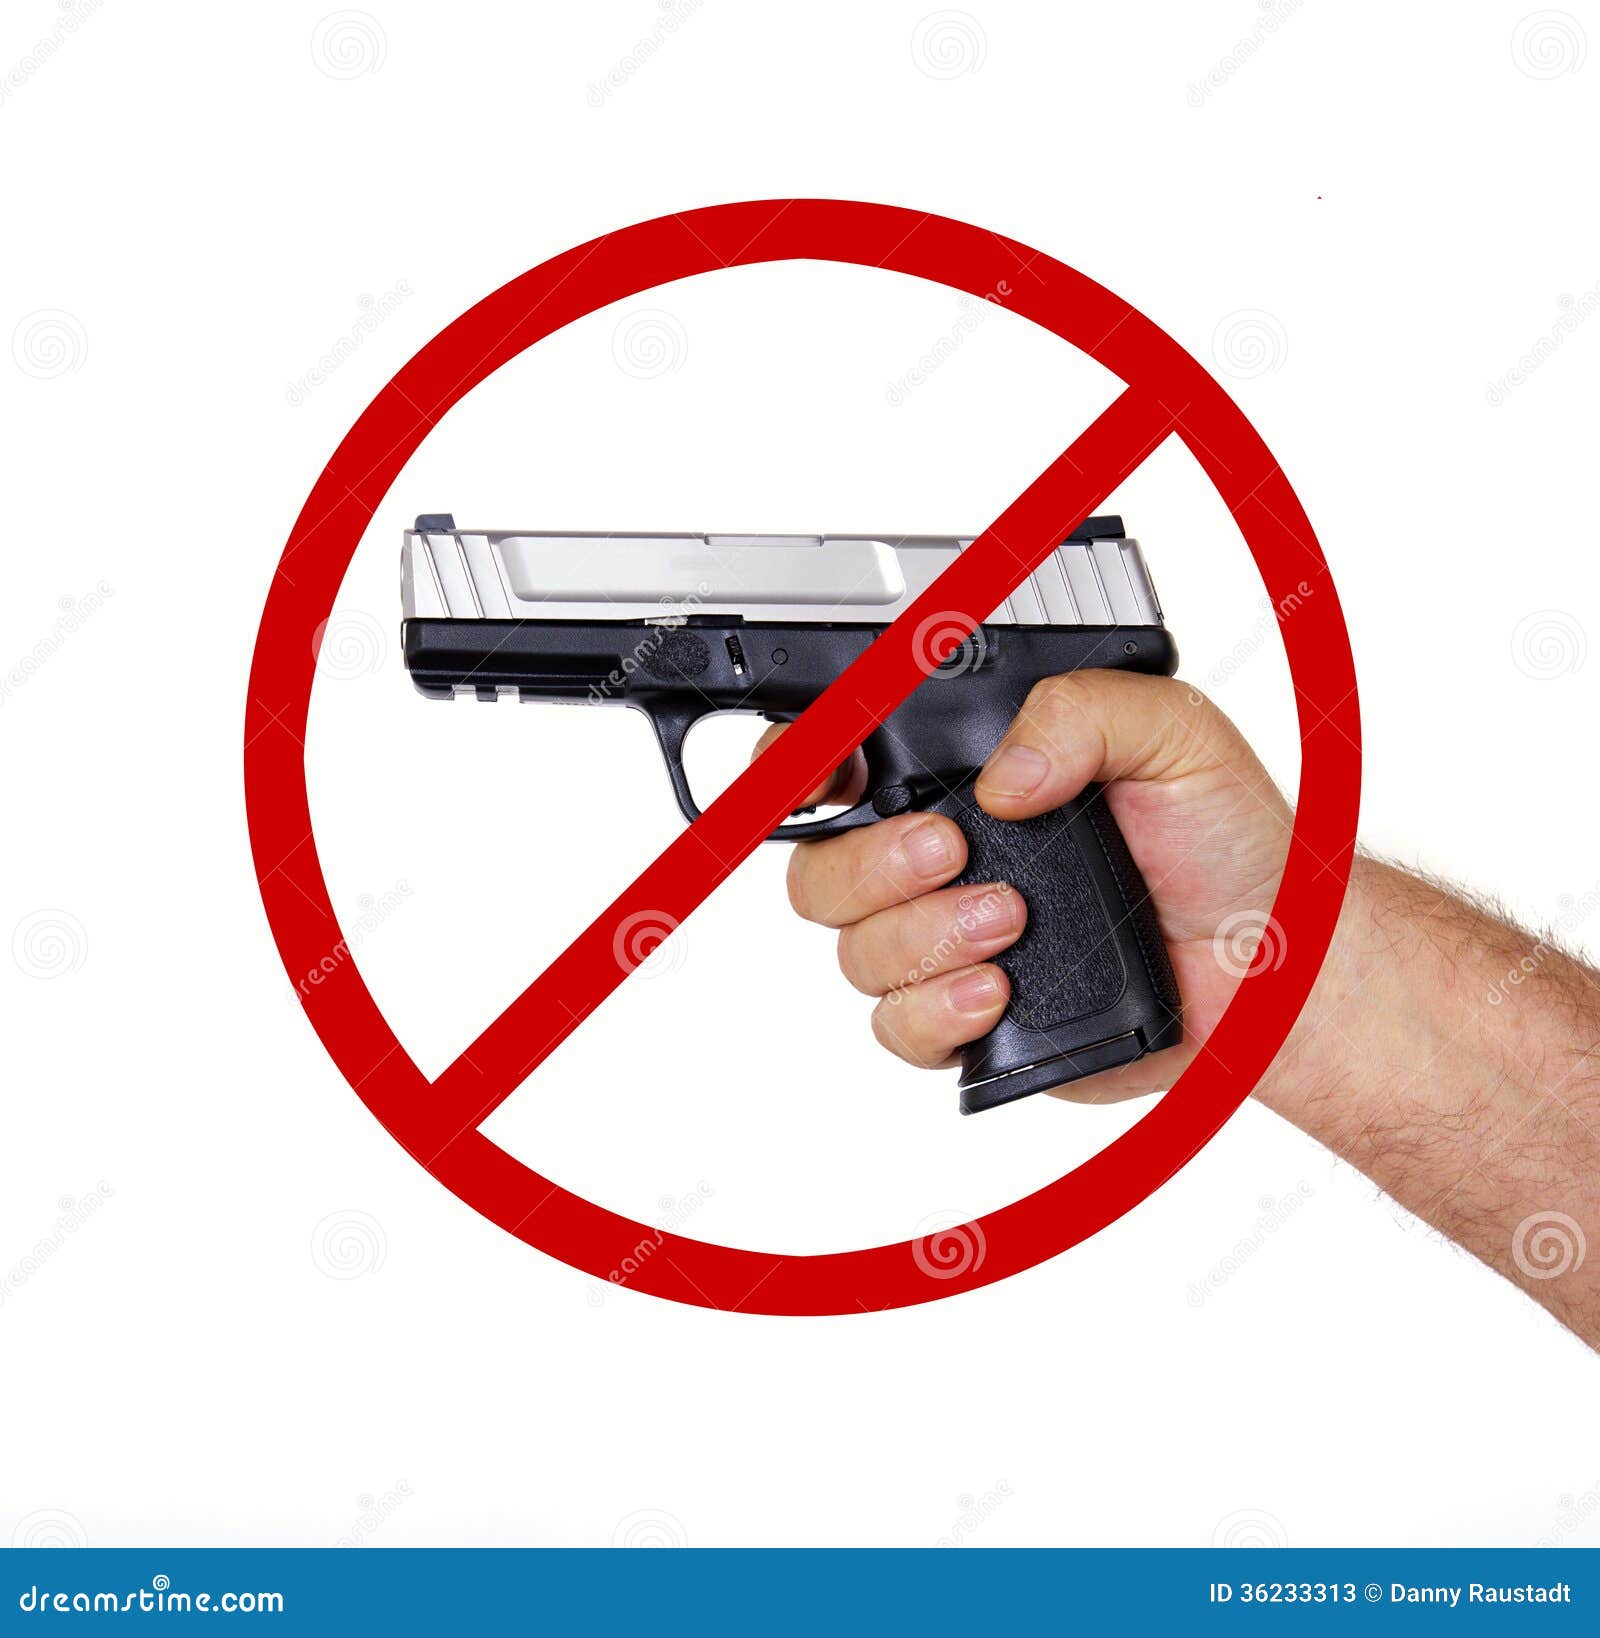 no firearms allowed